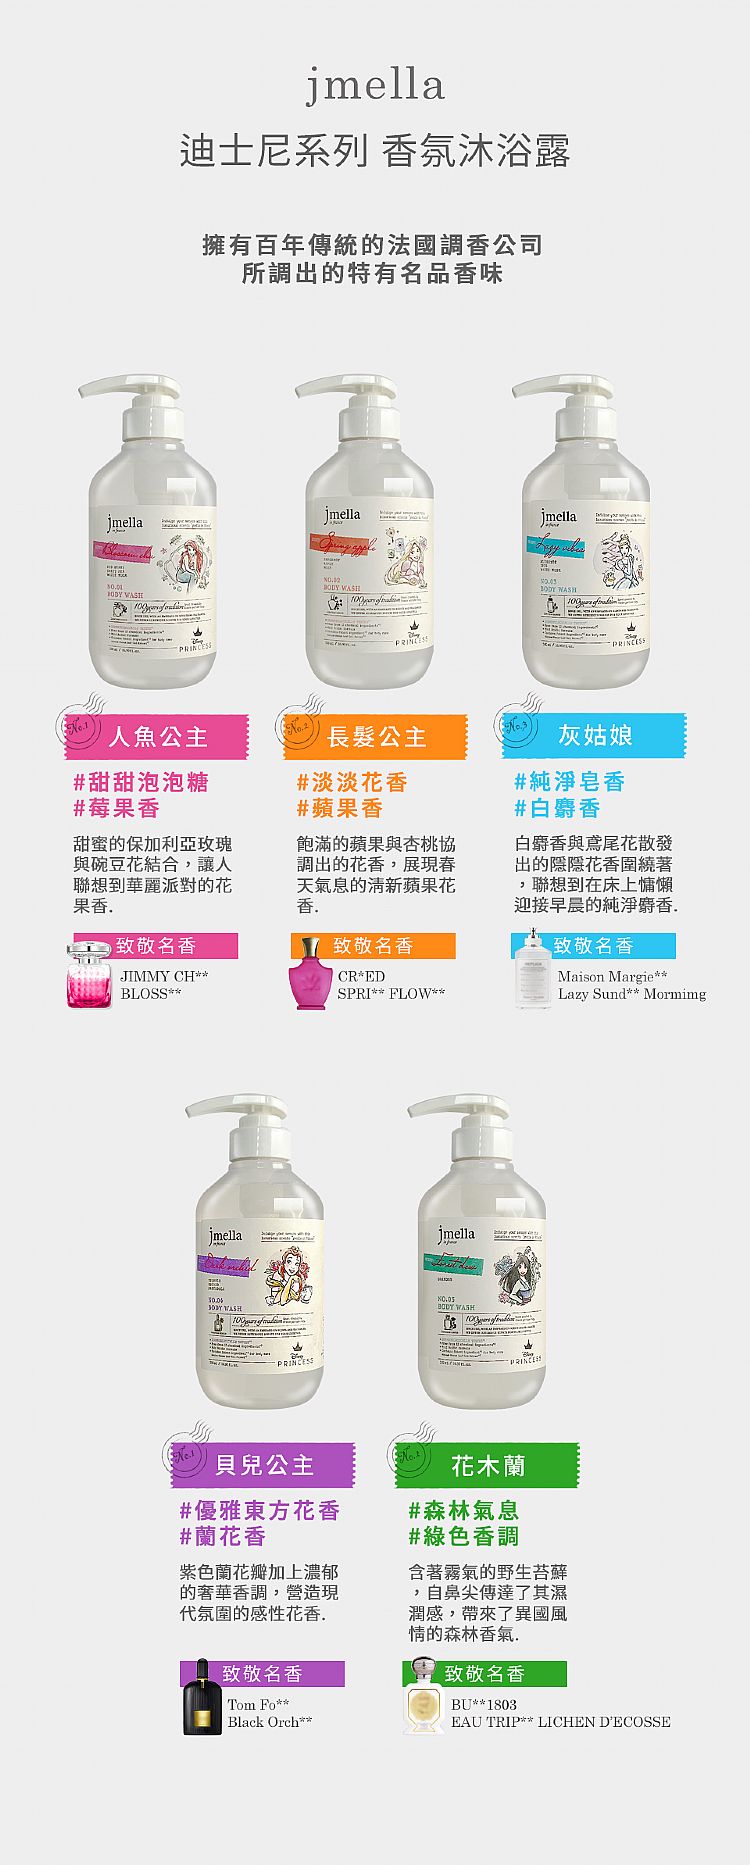 沐浴露 身體清潔 身體乳 身體保養 韓國 身體保養